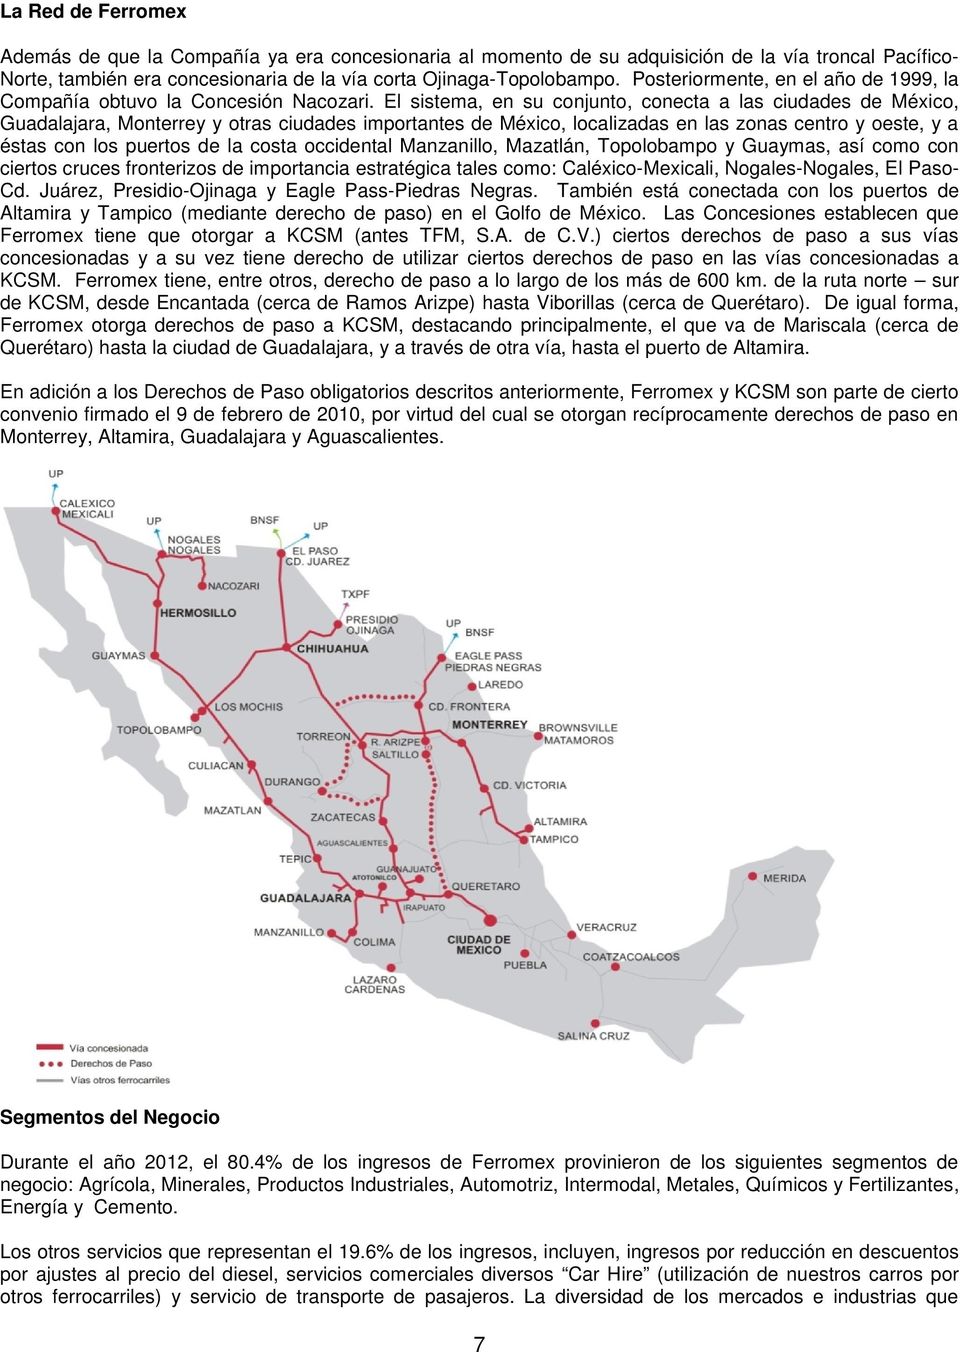 El sistema, en su conjunto, conecta a las ciudades de México, Guadalajara, Monterrey y otras ciudades importantes de México, localizadas en las zonas centro y oeste, y a éstas con los puertos de la